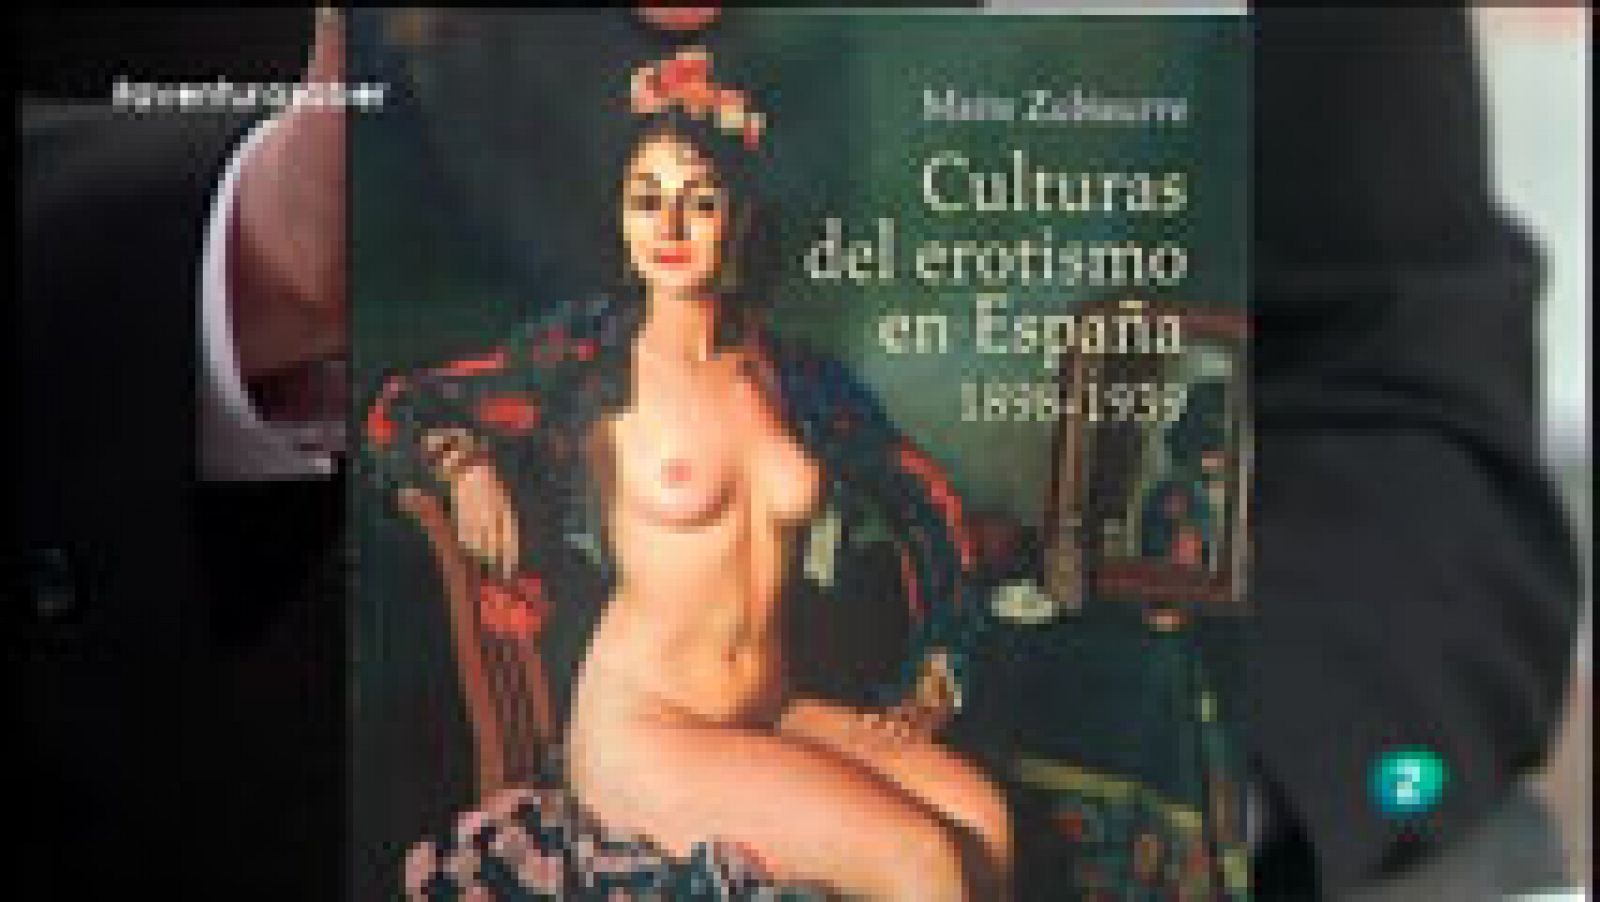 La aventura del Saber: La Aventura del Saber. Maite Zubiaurre. Culturas del erotismo en España | RTVE Play